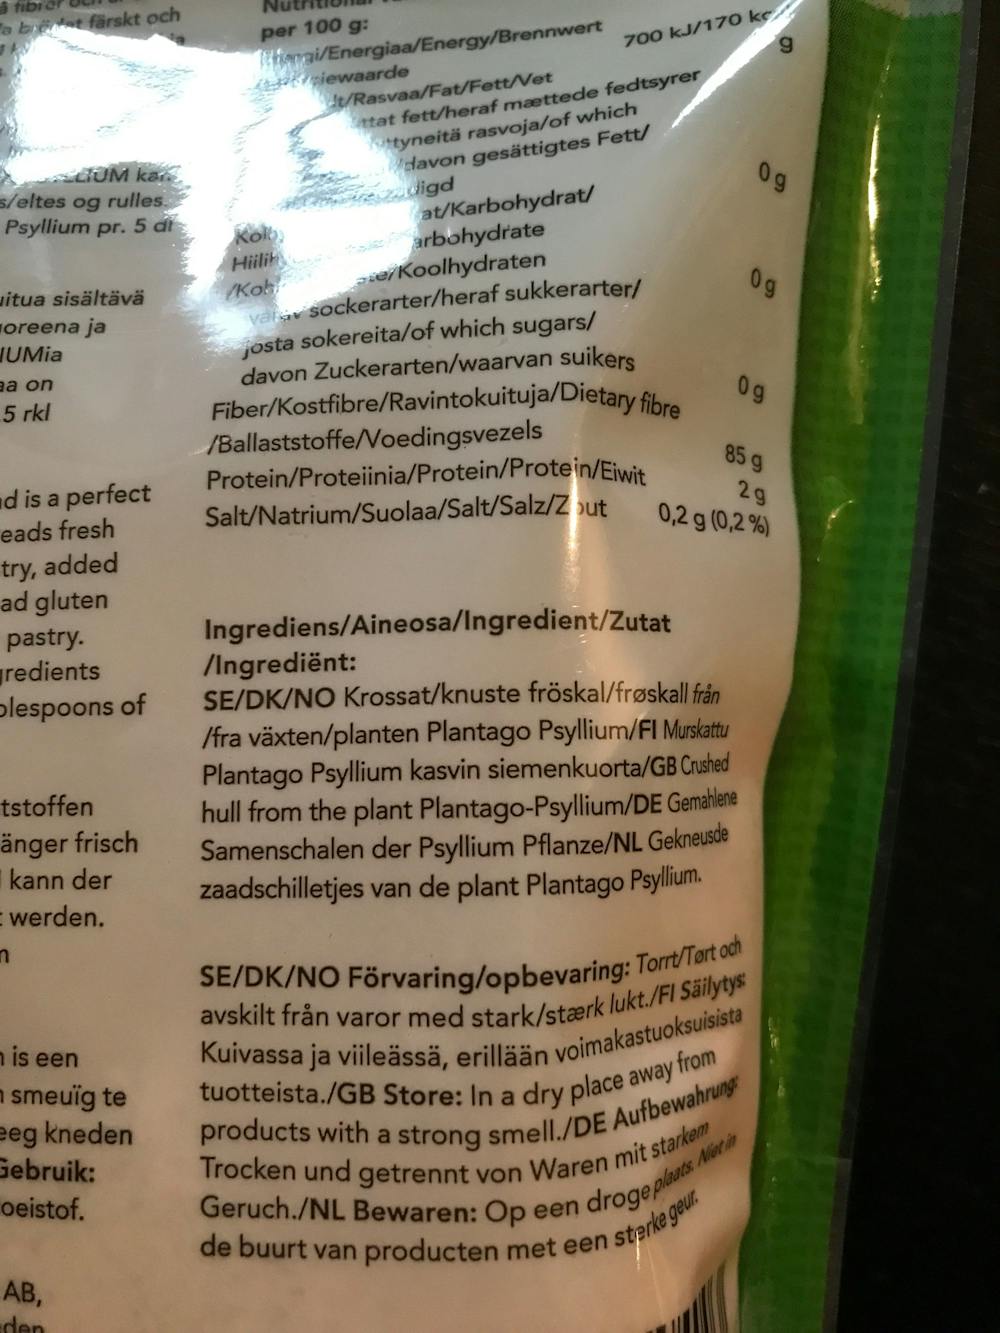 Ingredienslisten til Psyllium 85% kostfiber, Finax